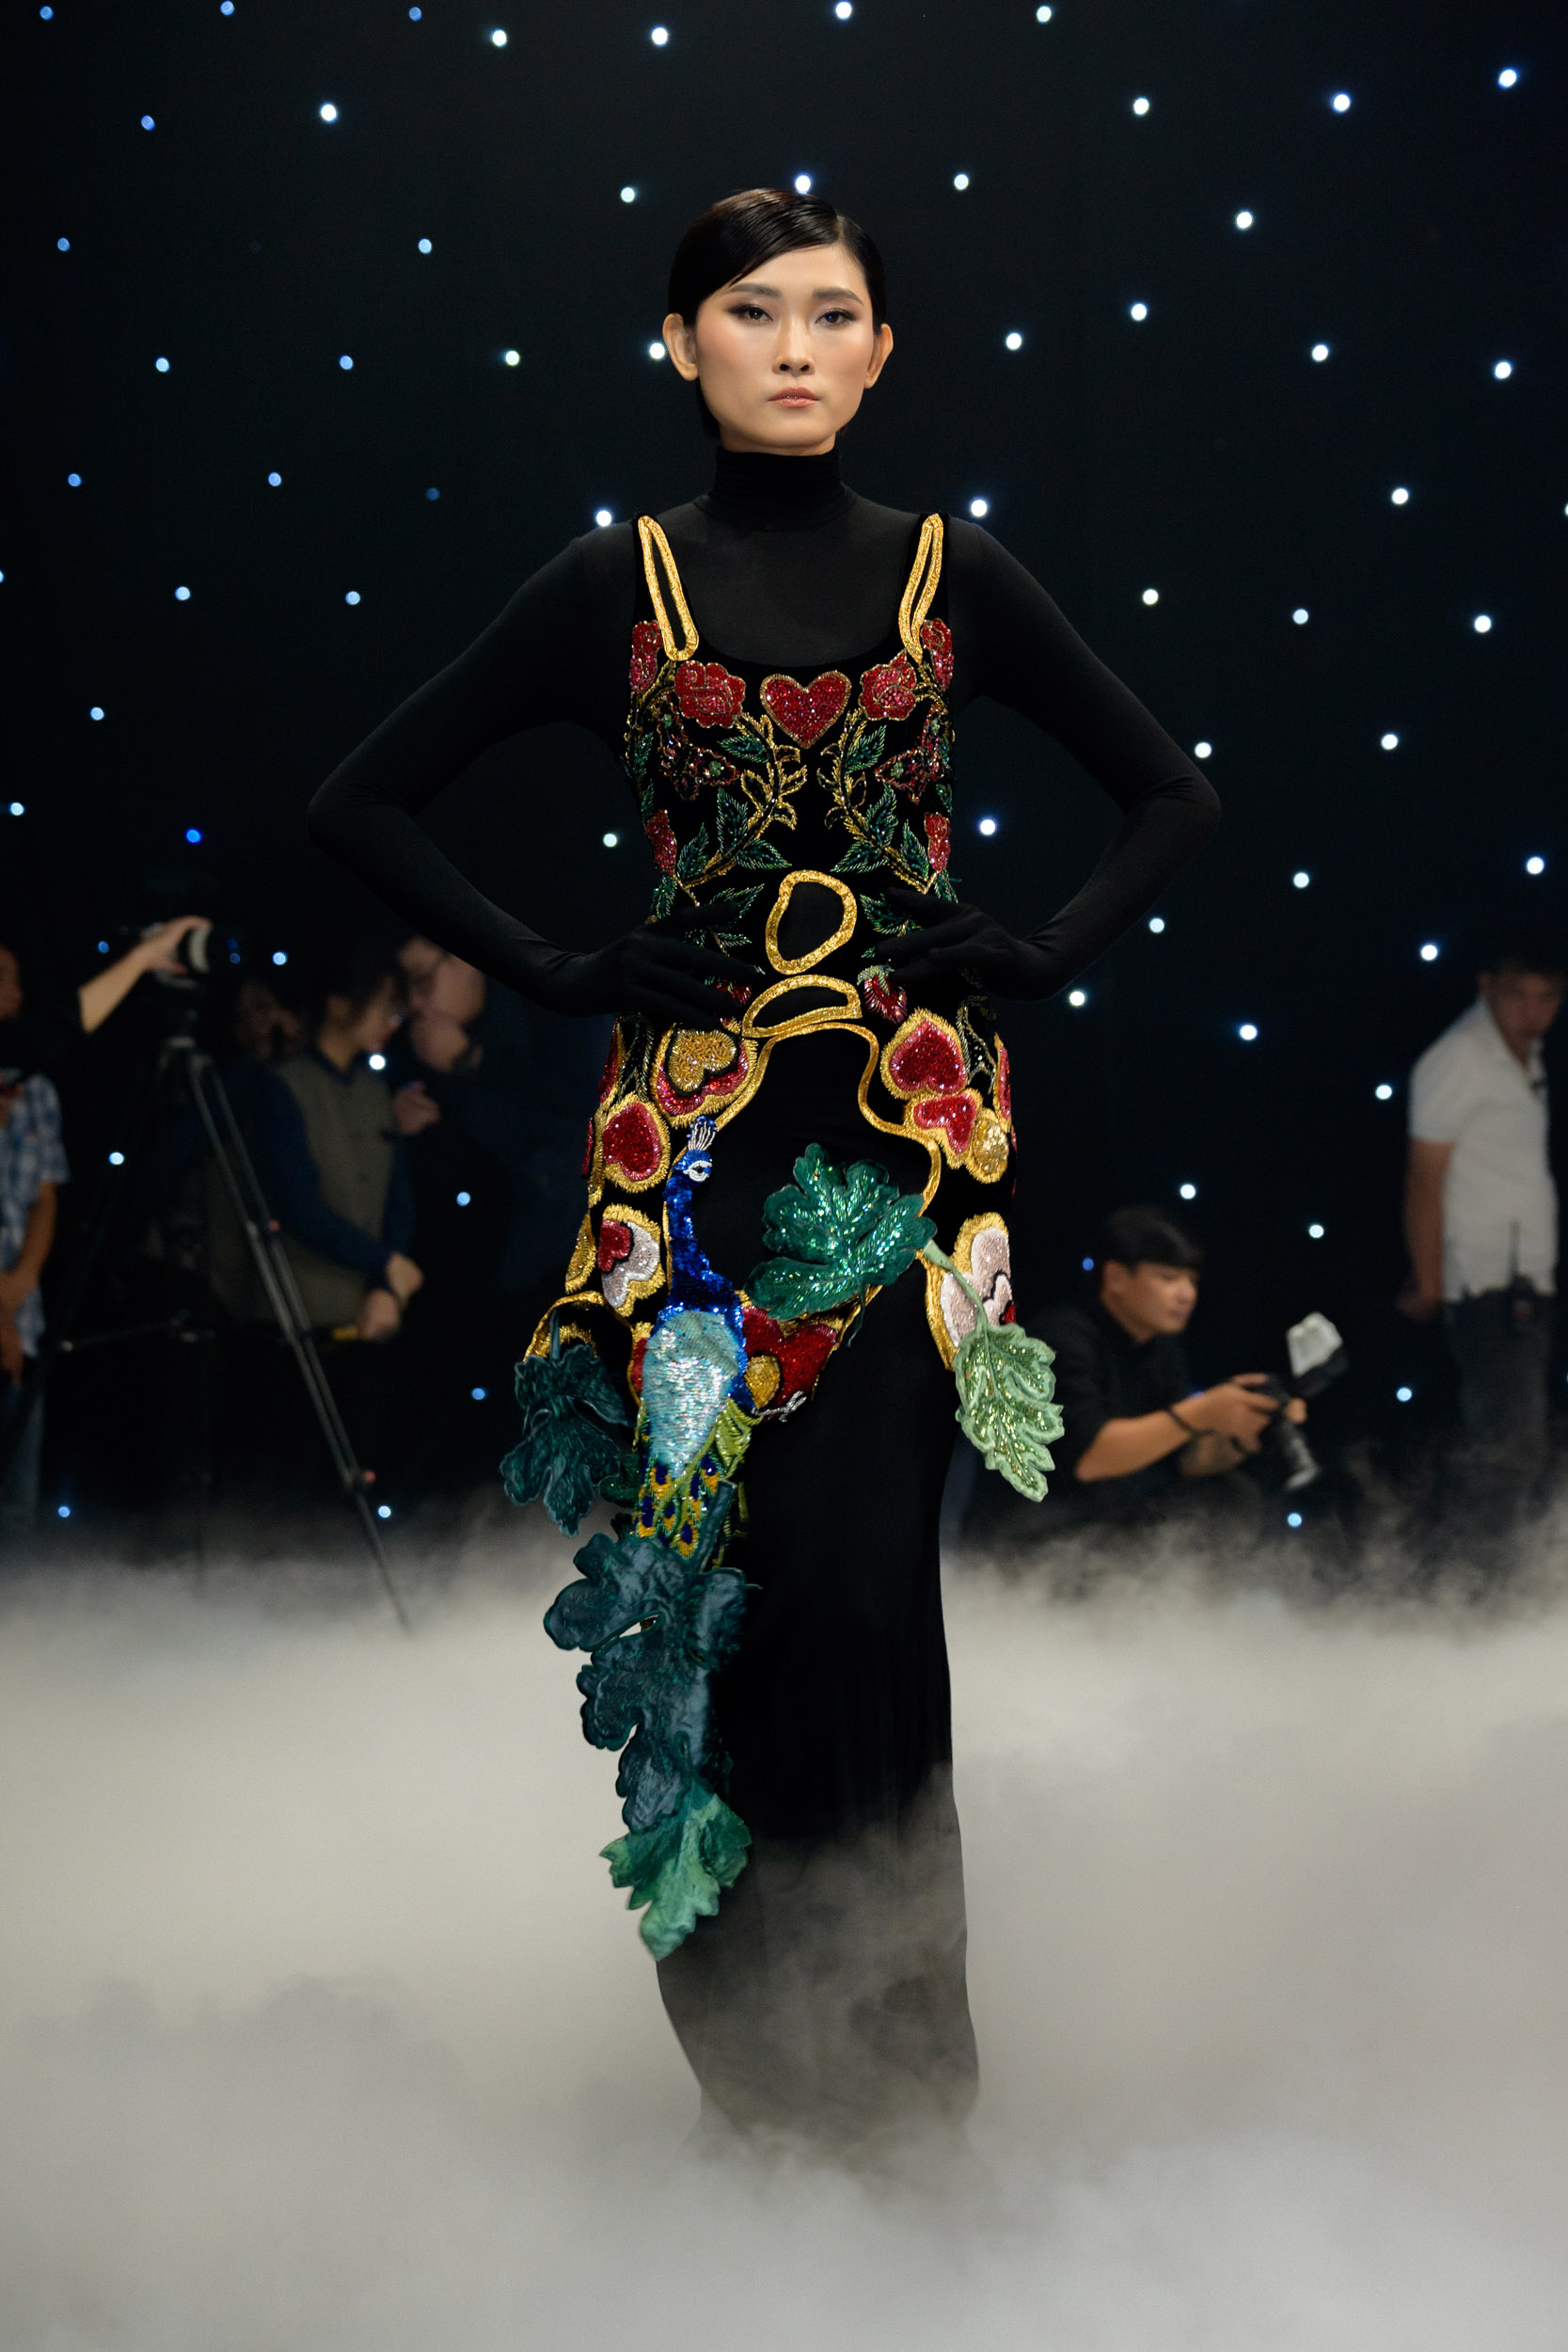 Lý Quí Khánh quay lại “đường đua” thời trang với bộ sưu tập tôn vinh vẻ đẹp của phụ nữ - ảnh 4